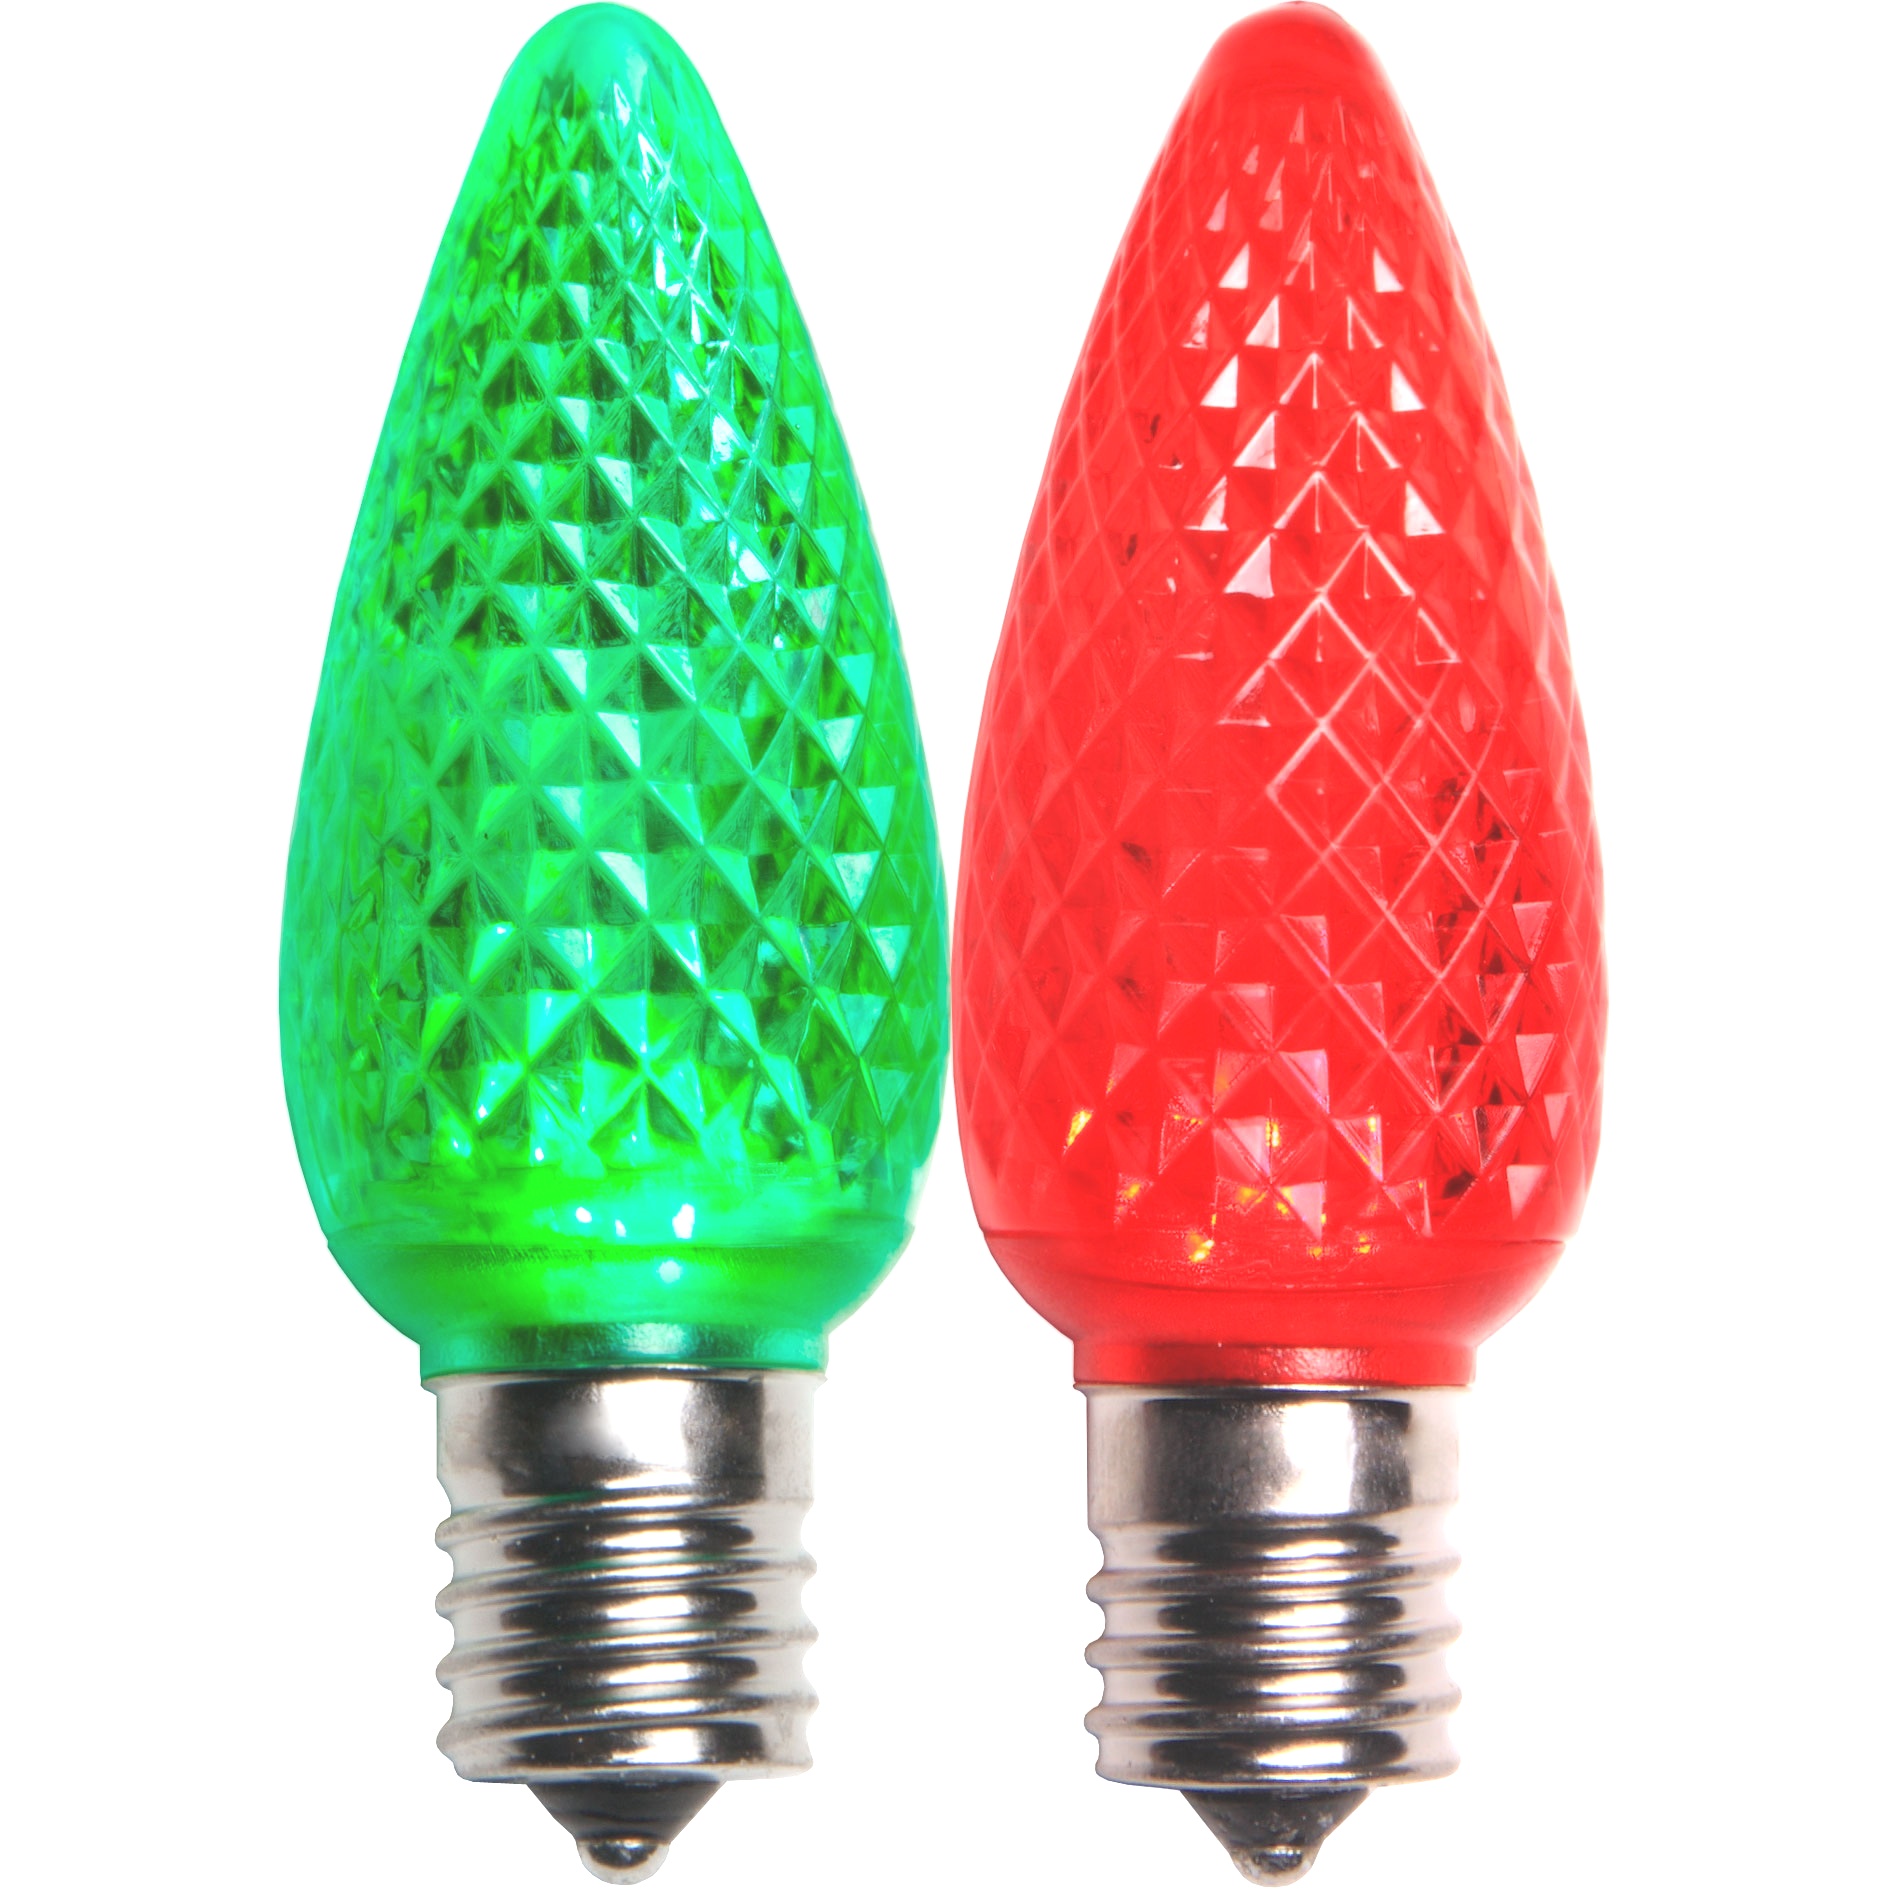 Christmas Light Replacement Bulbs | C9 Color Change Red LED Christmas Light Bulbs | Christmas Light Replacement Bulbs